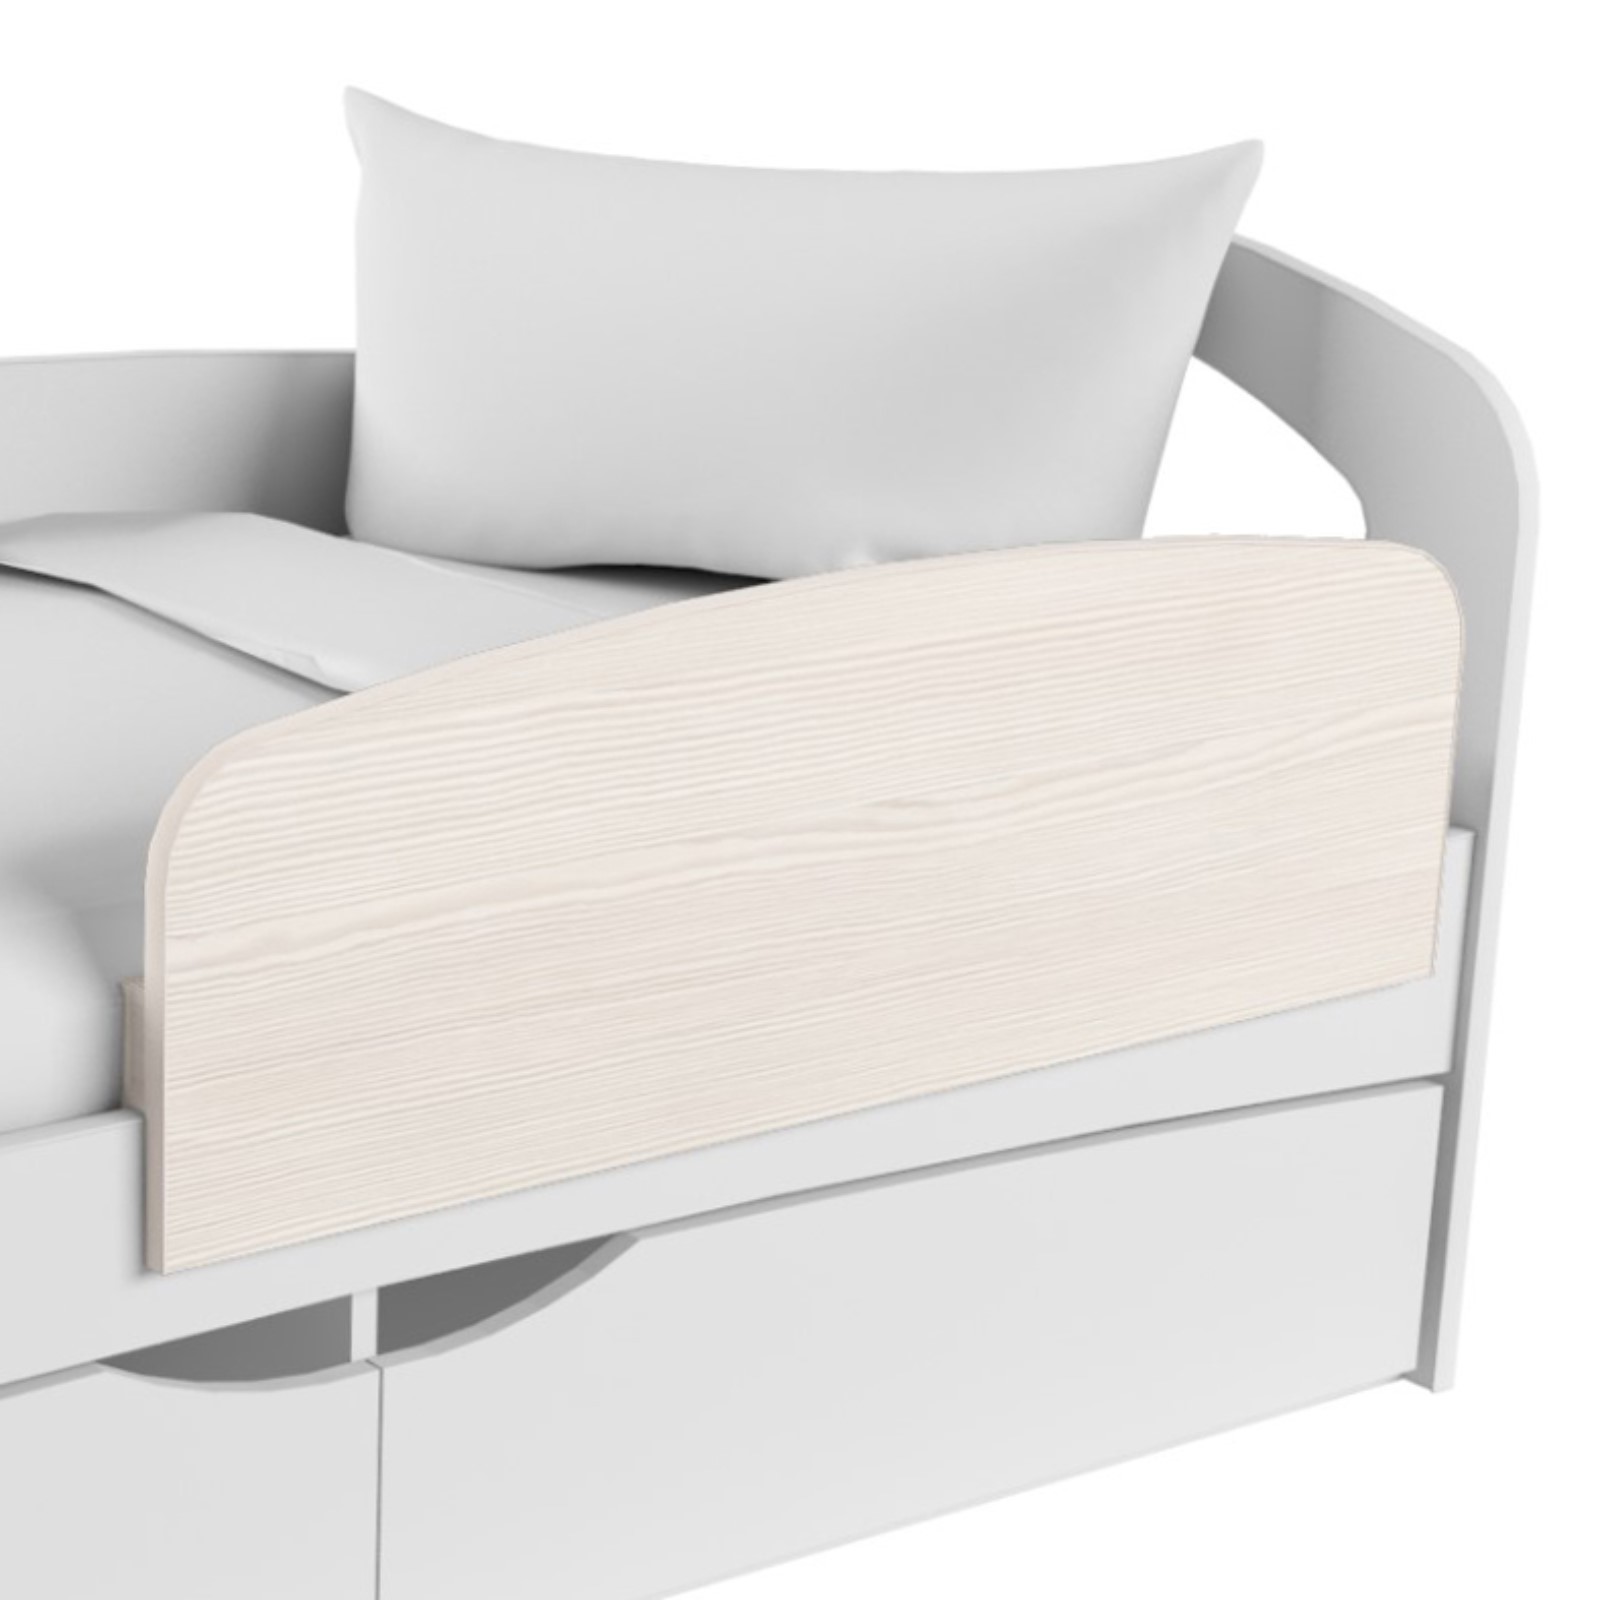 Барьер для кровати GUARD , складной, защитный барьер , бортик на кровать складной - 120xH65xD47 cm